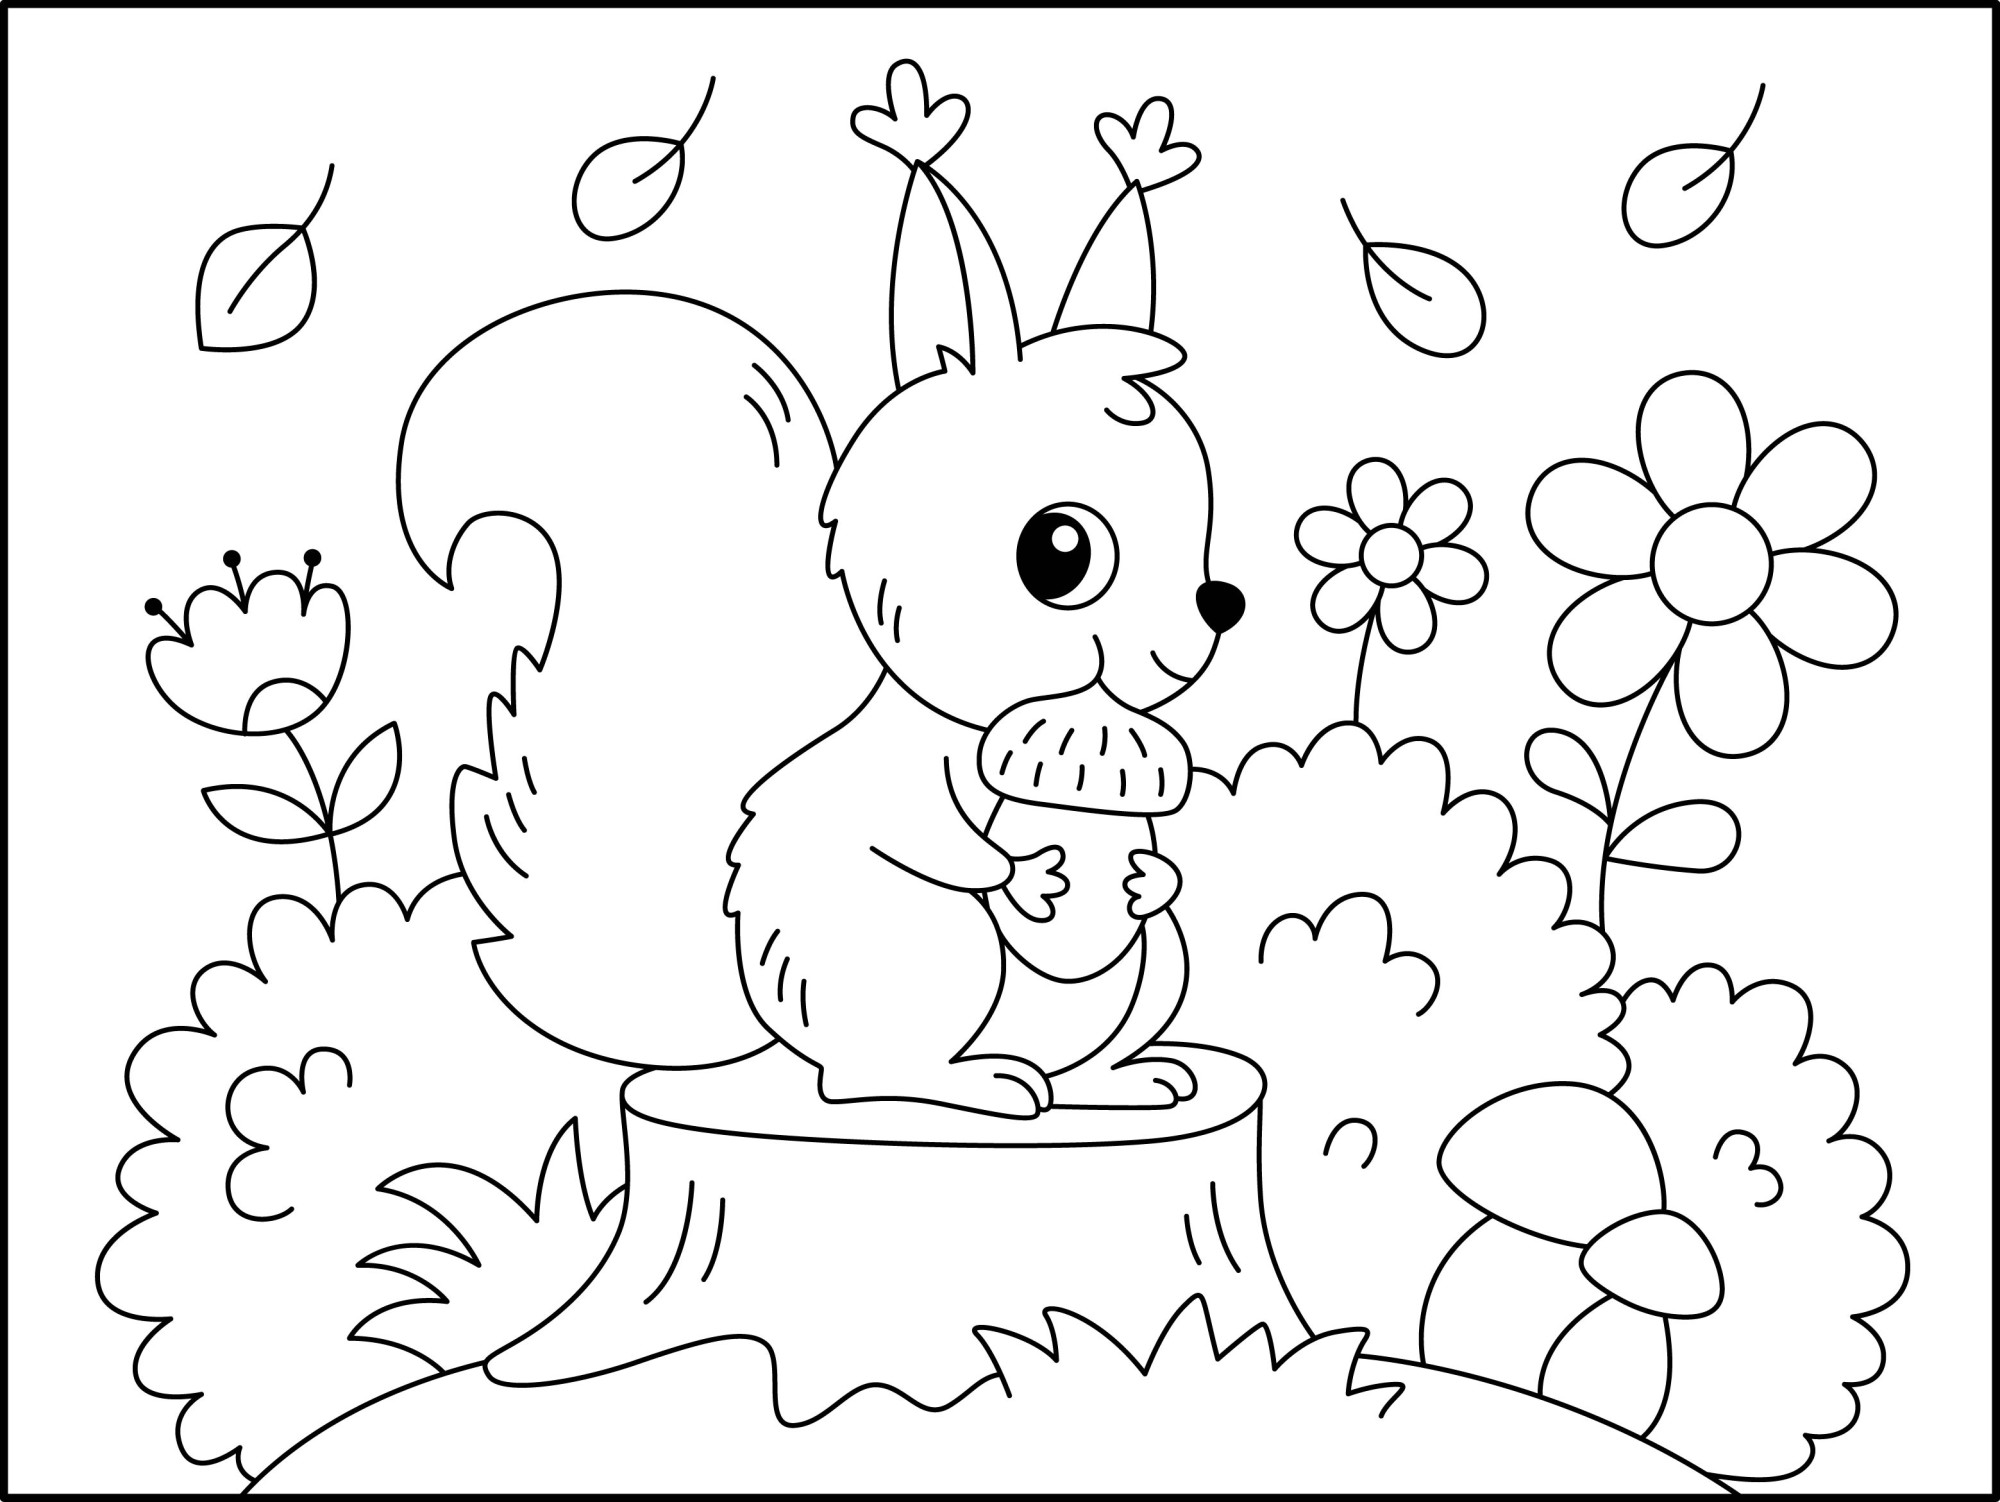 Раскраска для детей: белка с орешком сидит на пеньке в осеннем лесу